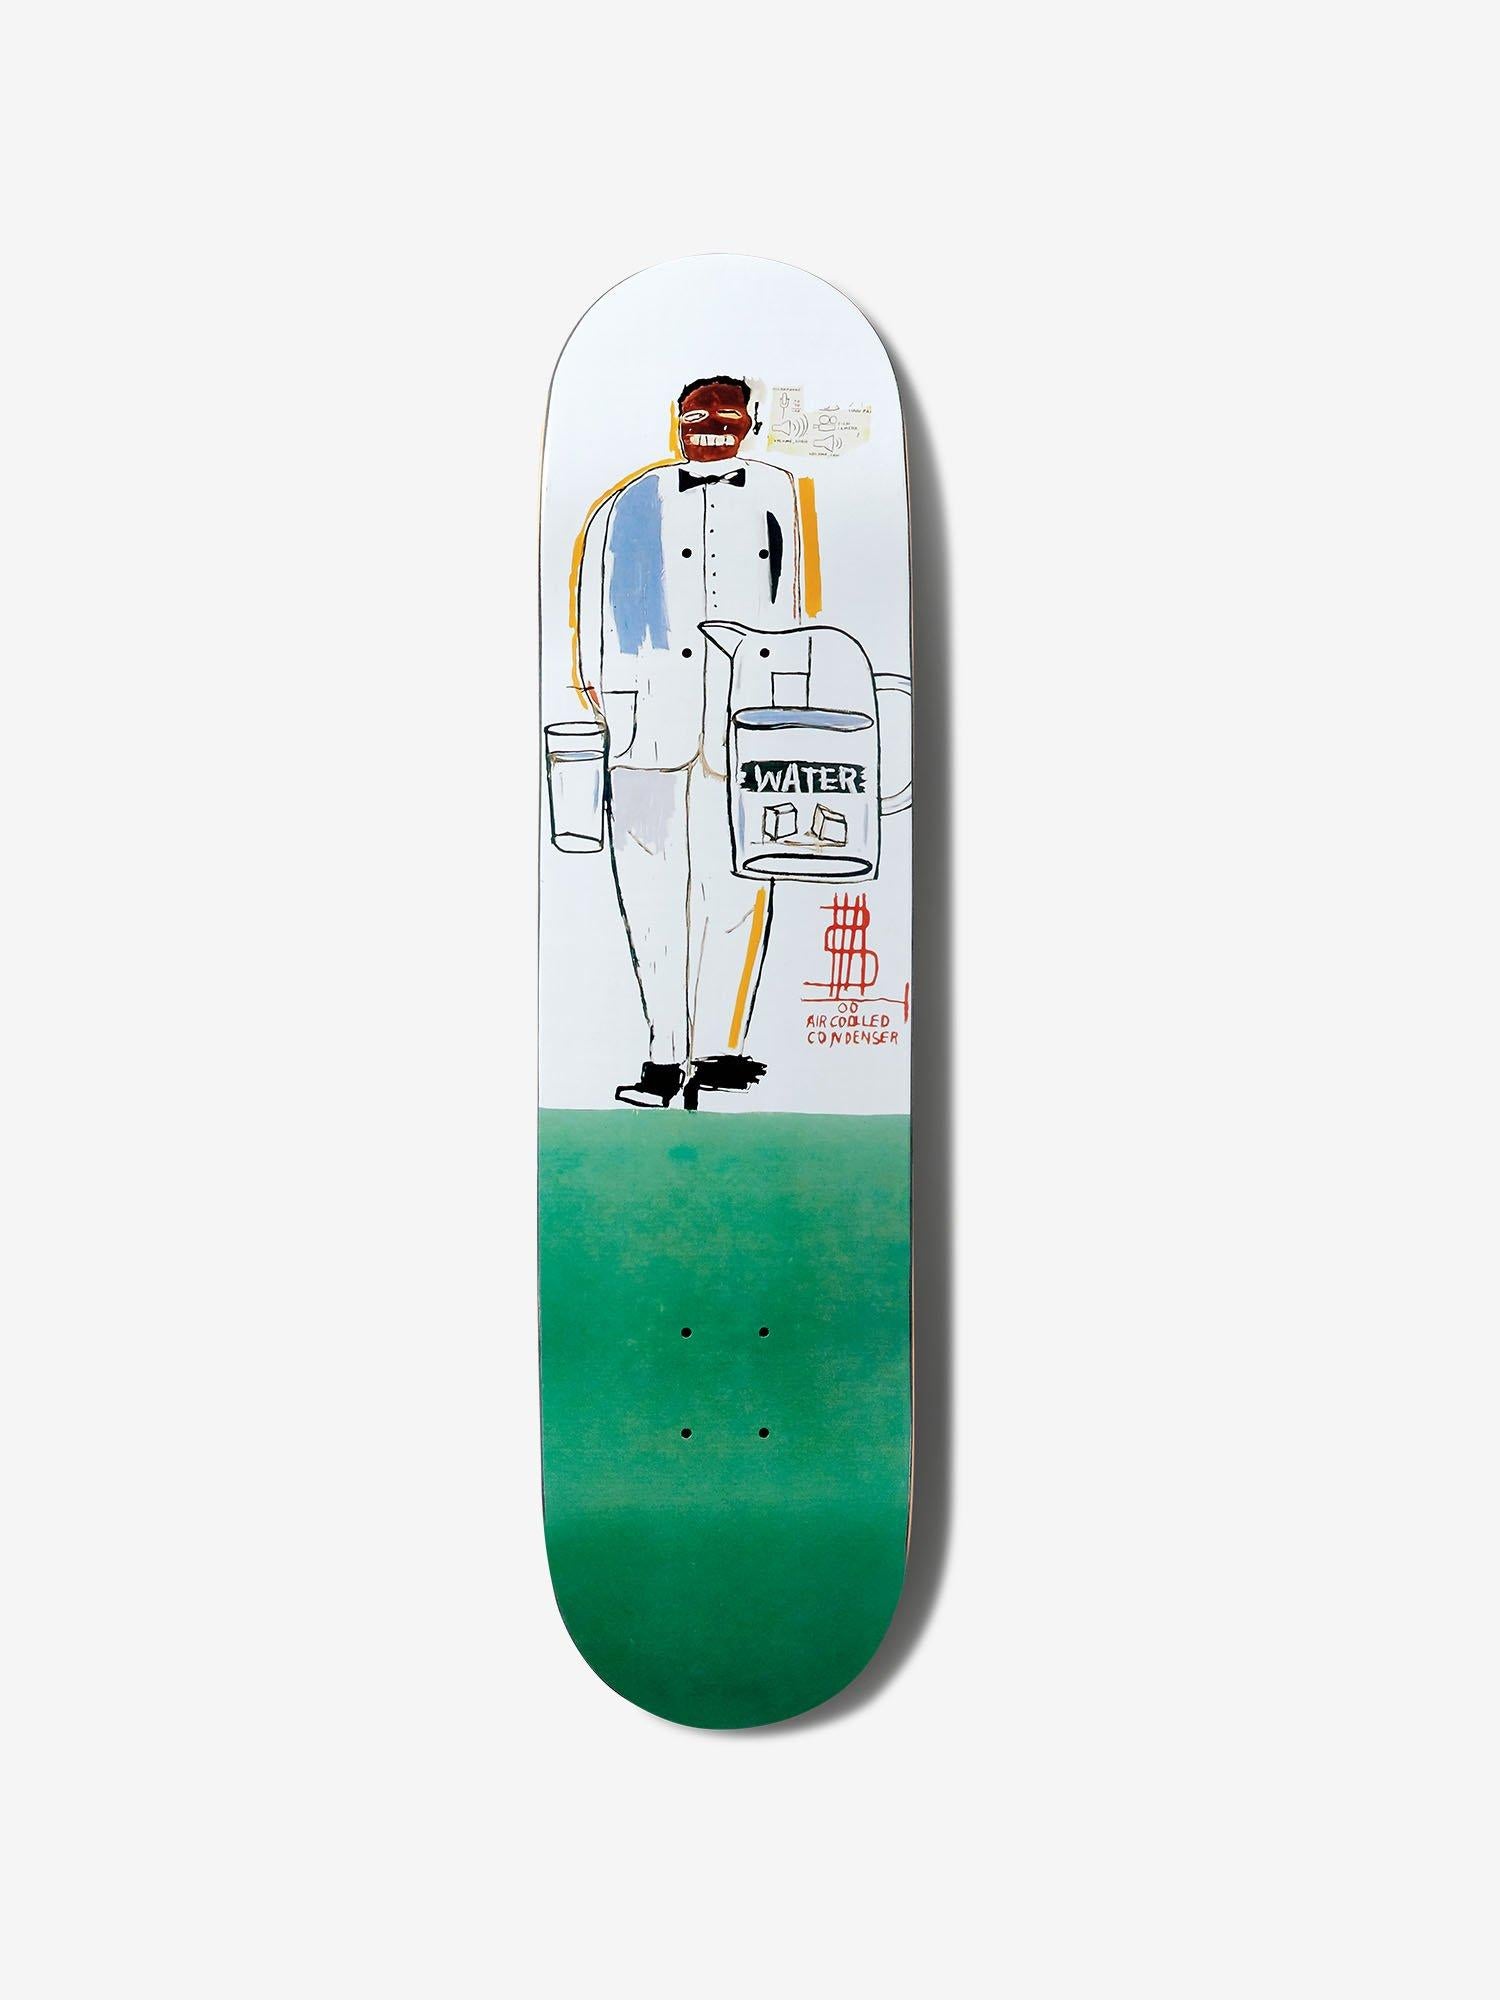 Basquiat Skateboard Deck (Basquiat skate deck)  - Pop Art Sculpture by after Jean-Michel Basquiat